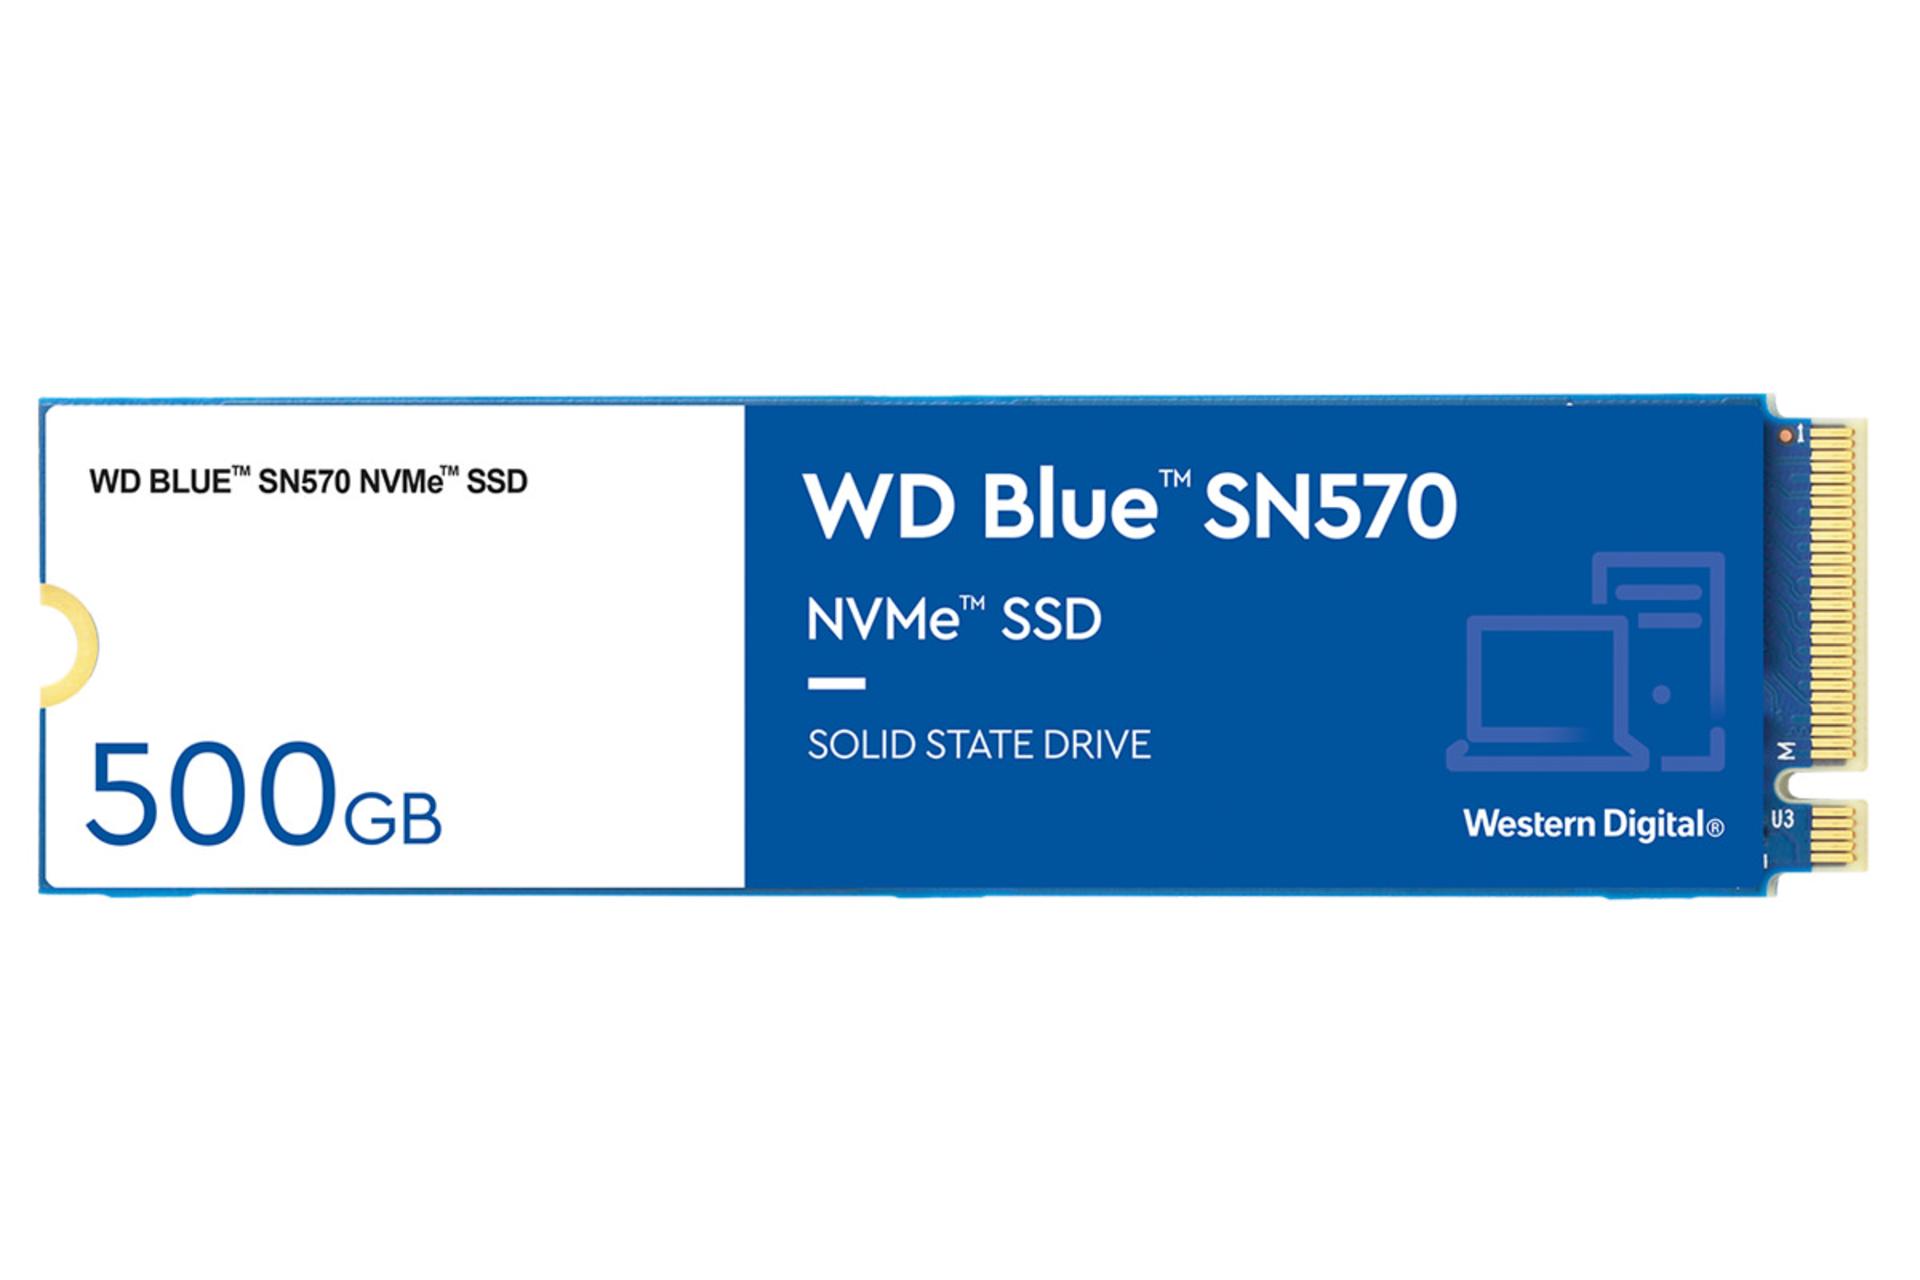 نمای روبرو SSD وسترن دیجیتال Blue SN570 NVMe M.2 ظرفیت 500 گیگابایت